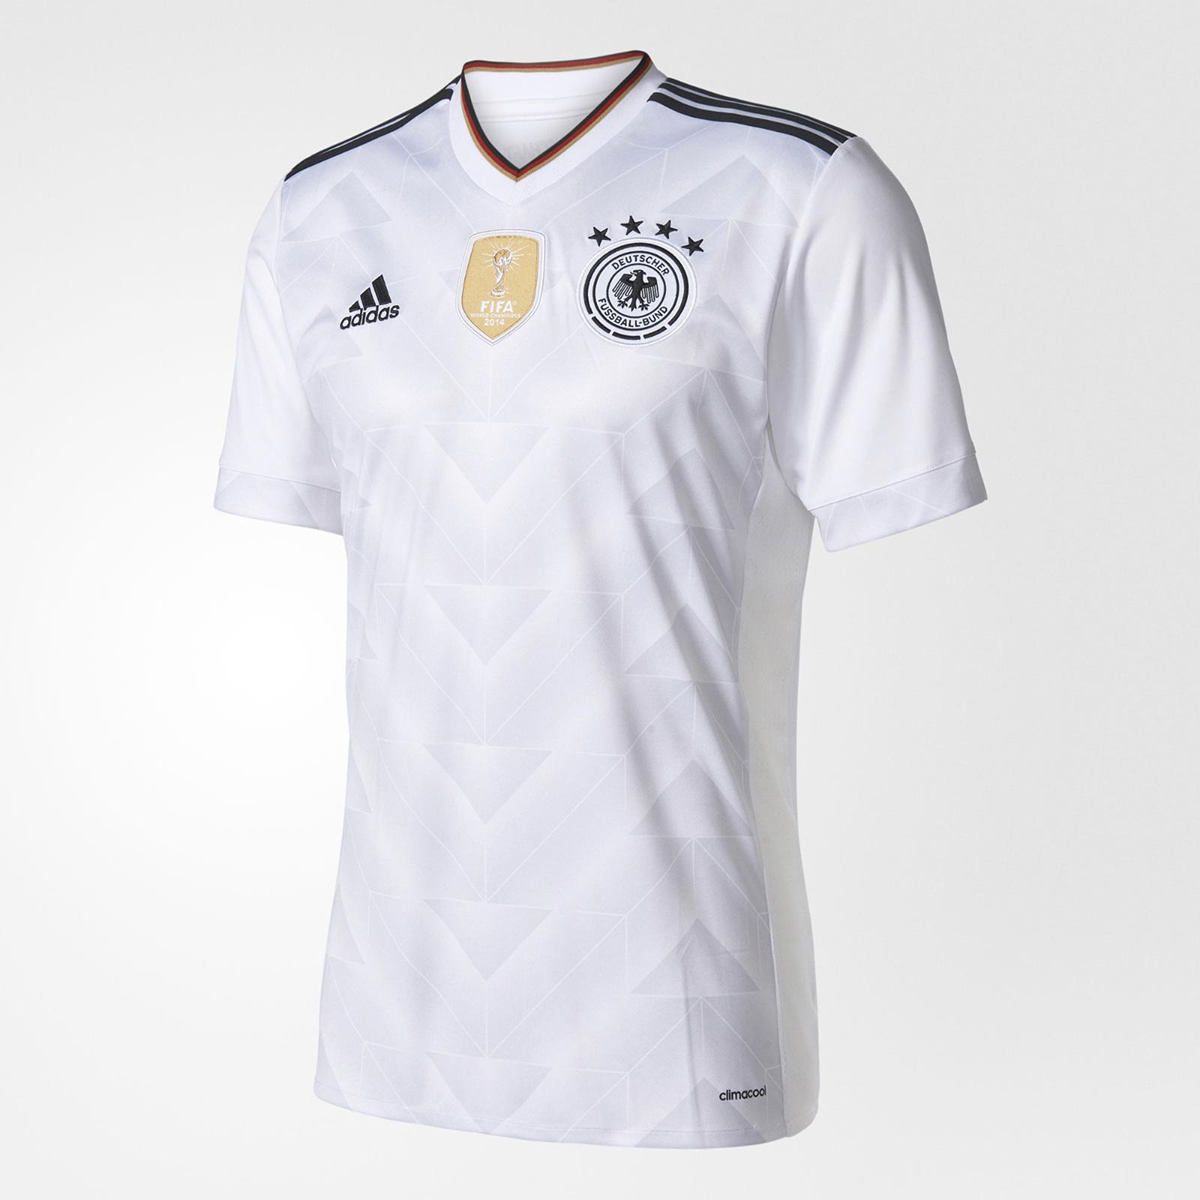 Camiseta adidas de Alemania Copa Confederaciones 2017